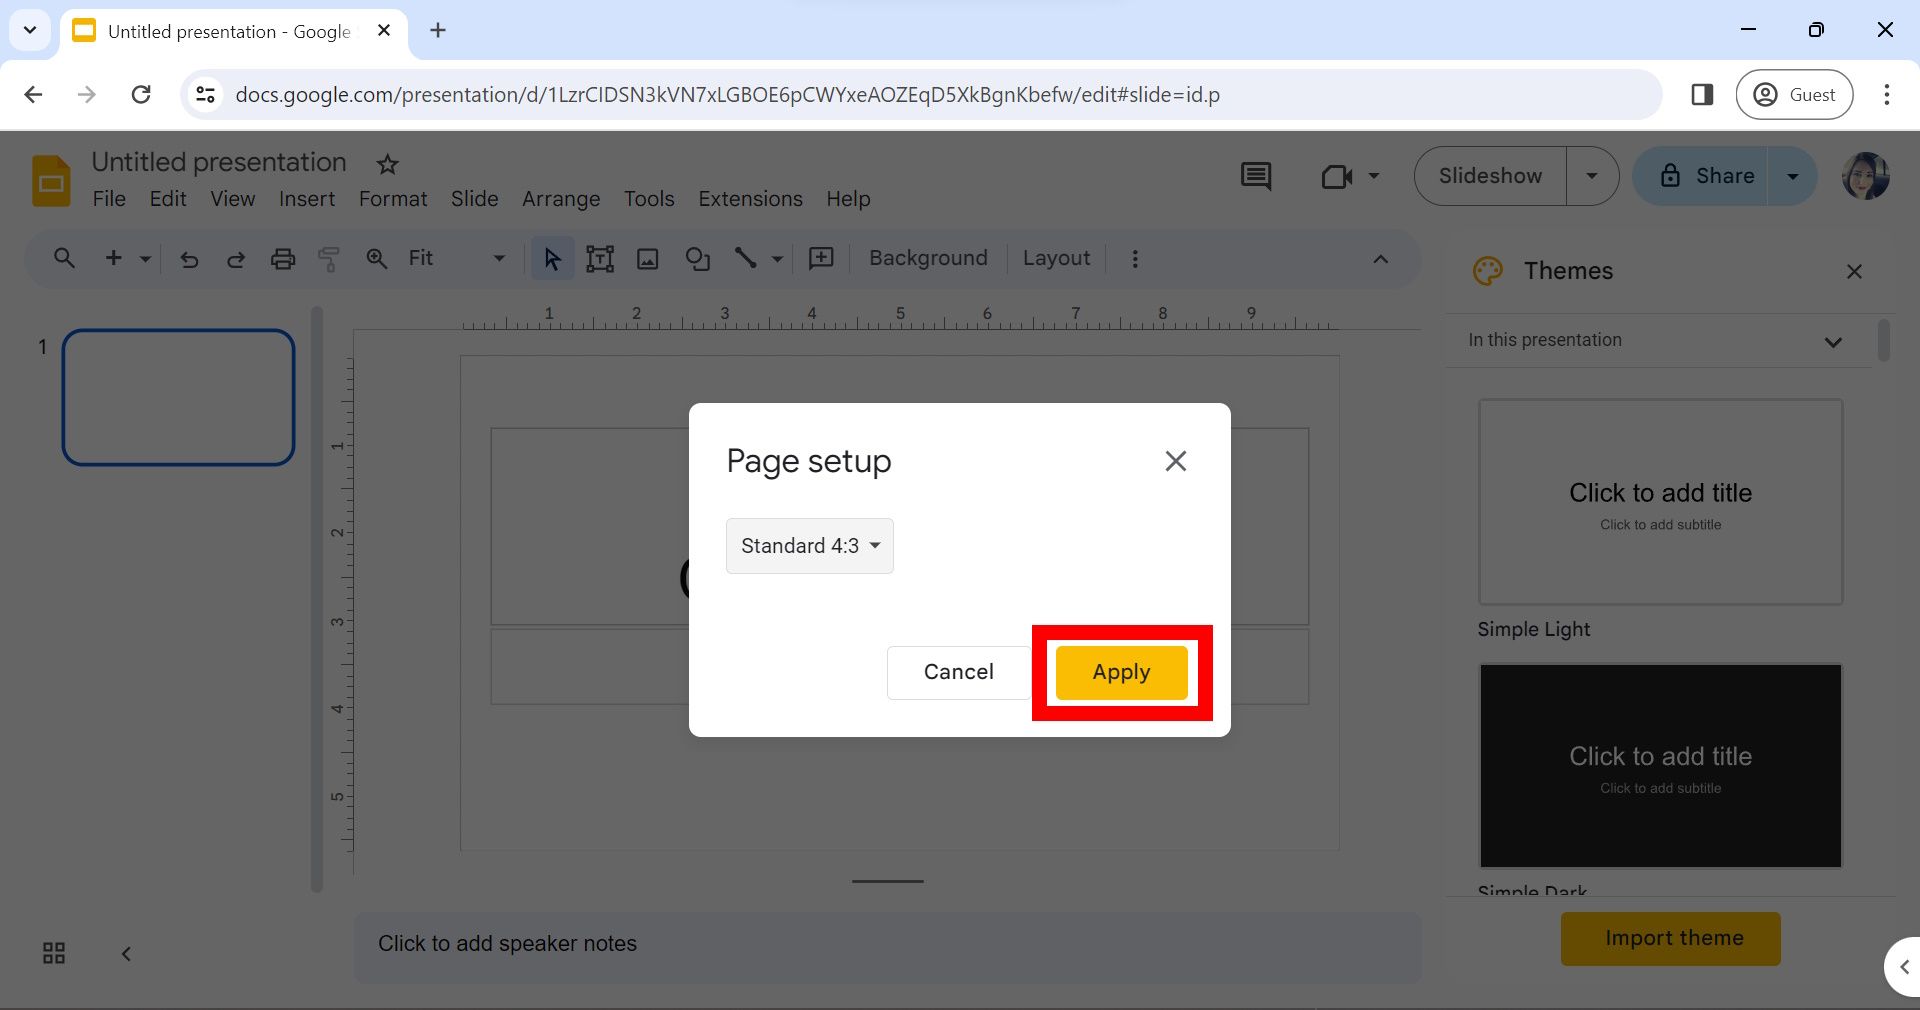 retângulo vermelho sobre o botão Aplicar na janela de configuração da página no Google Slides